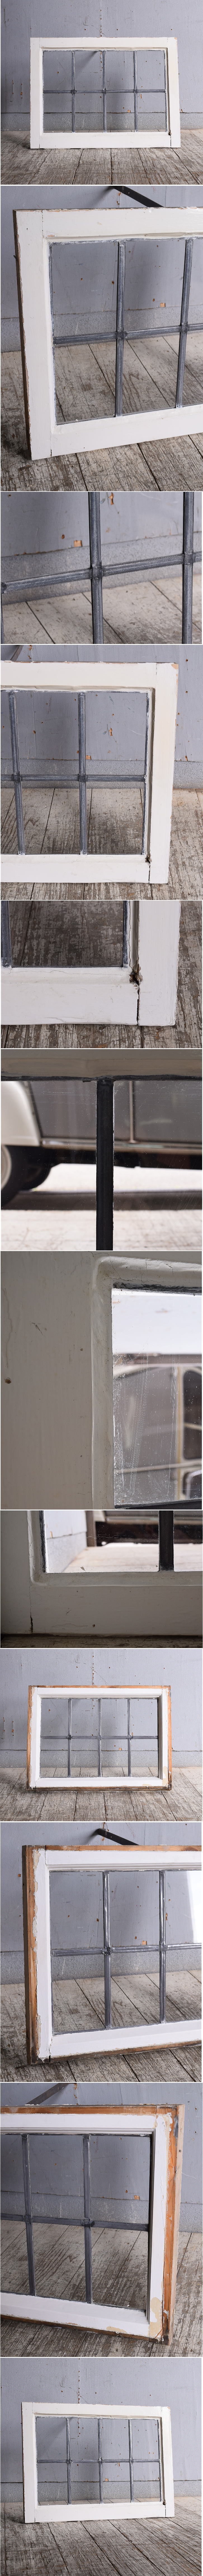 イギリス アンティーク 窓 無色透明 10618